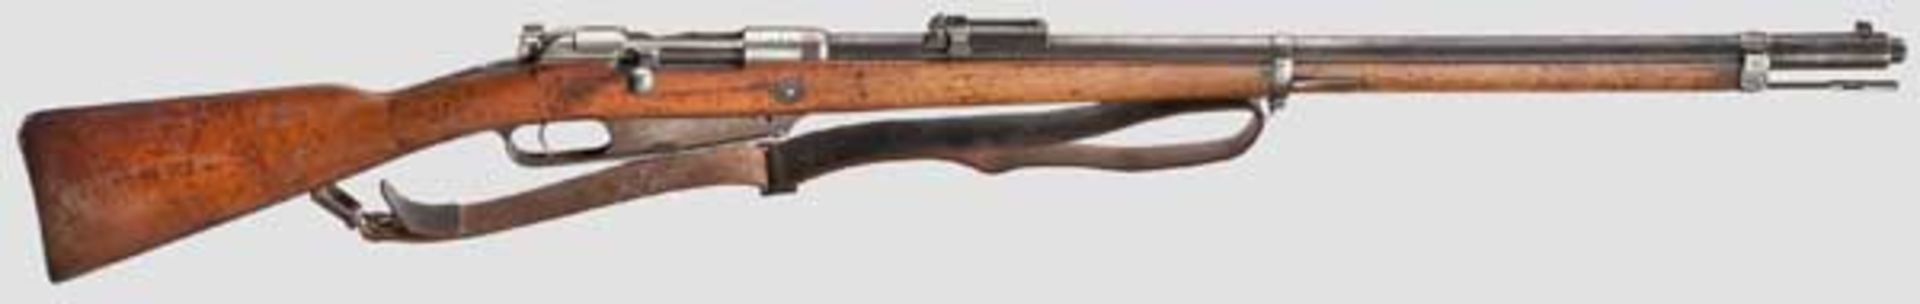 Gewehr 88/05, Danzig, 1891 Kal. 8 x 57, Nr. 9452a. Nummerngleich bis auf Schloss und Visierschieber.